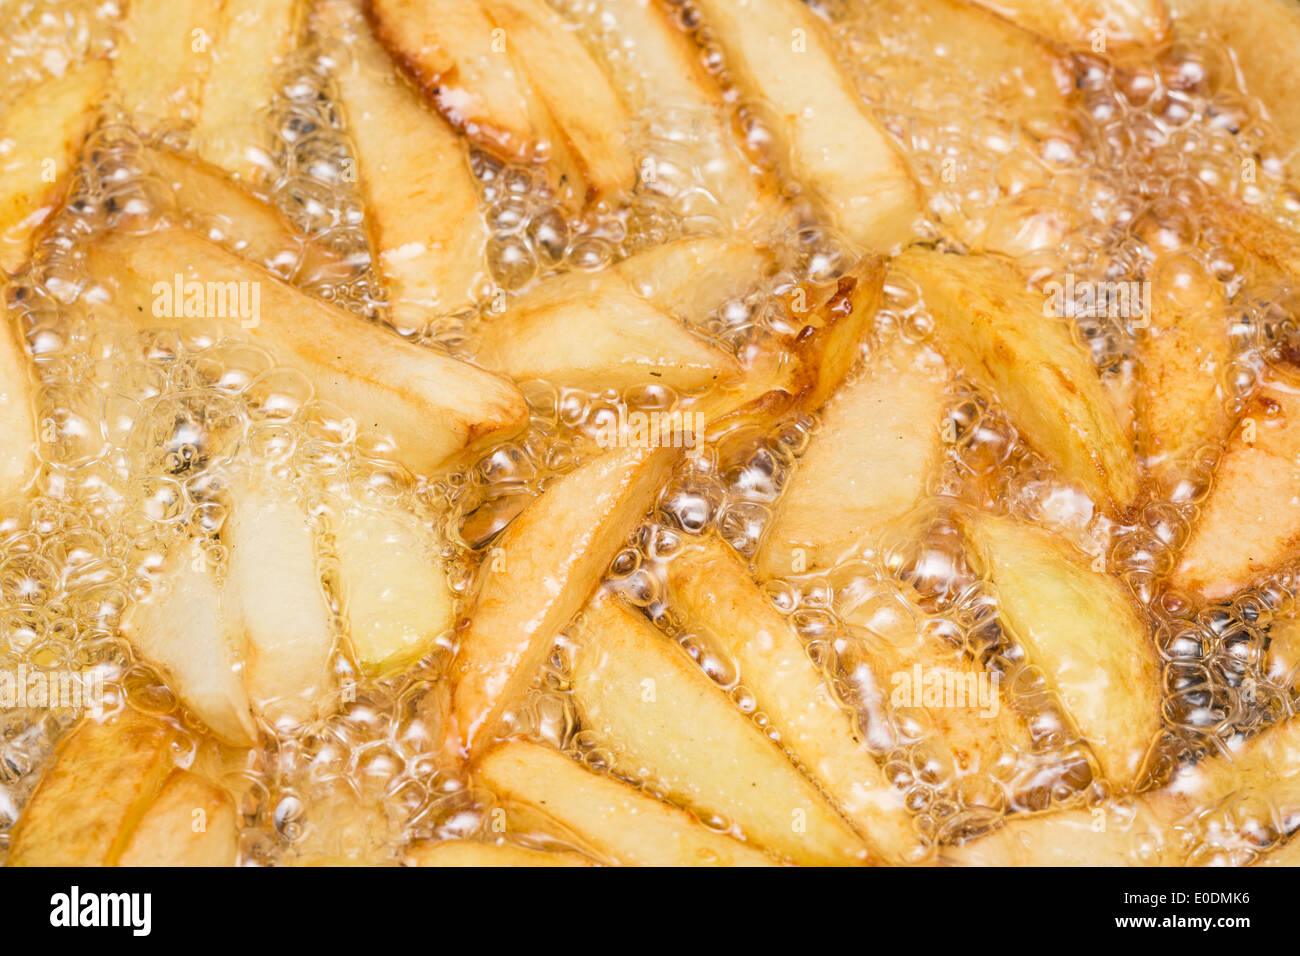 Zubereitung von Pommes frites In kochend heiß Öl mit frischen Pommes frites Stockfoto